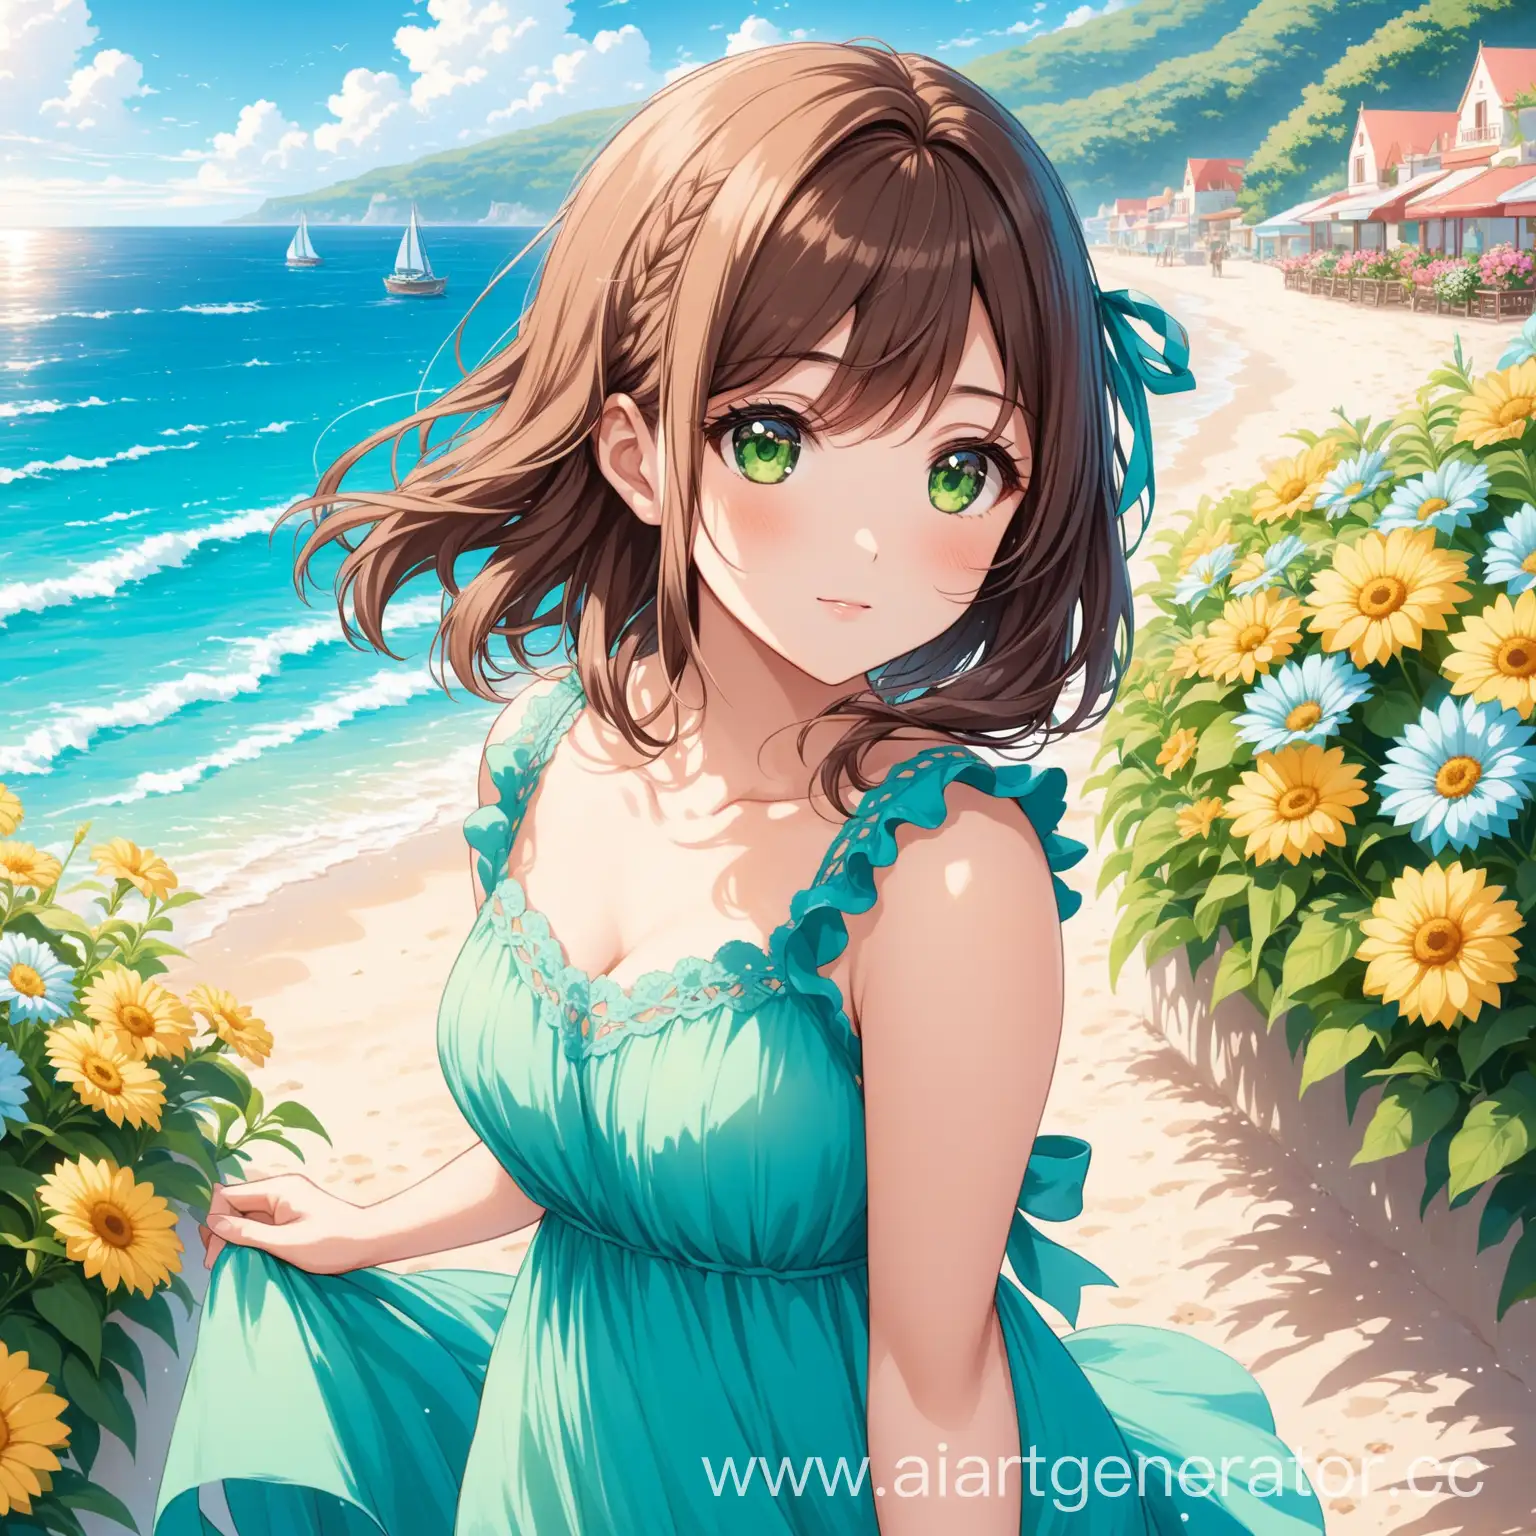 Aria Roscente se encuentra en la orilla del mar con un vestido azul de verano con el pelo corto castaño y con los ojos de color verde rodeado de flores 